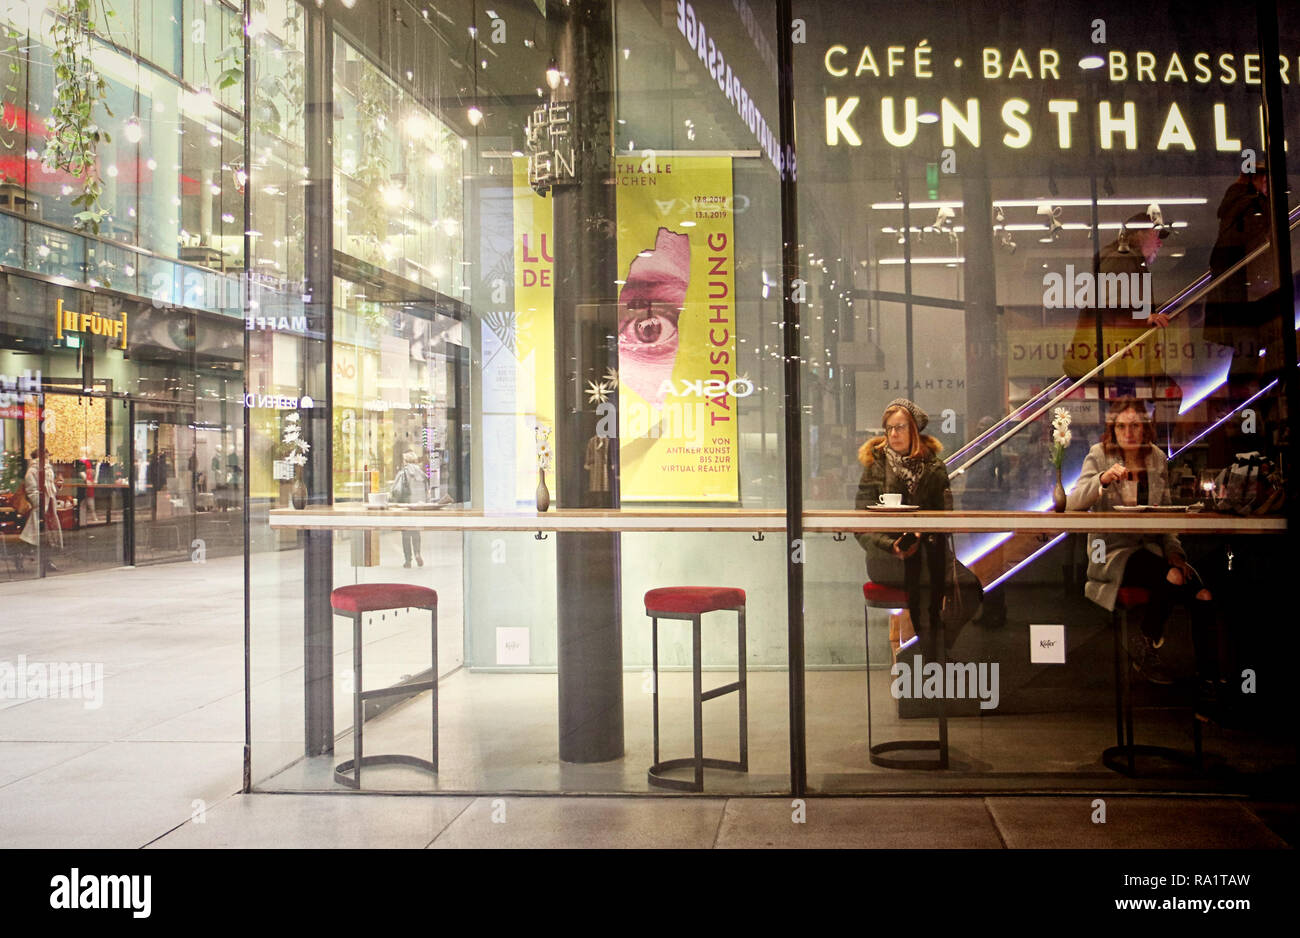 MUNICH, GERMANY - Coffee bar before Christmas, à la mode of Edward Hopper, two women sitting alone Stock Photo